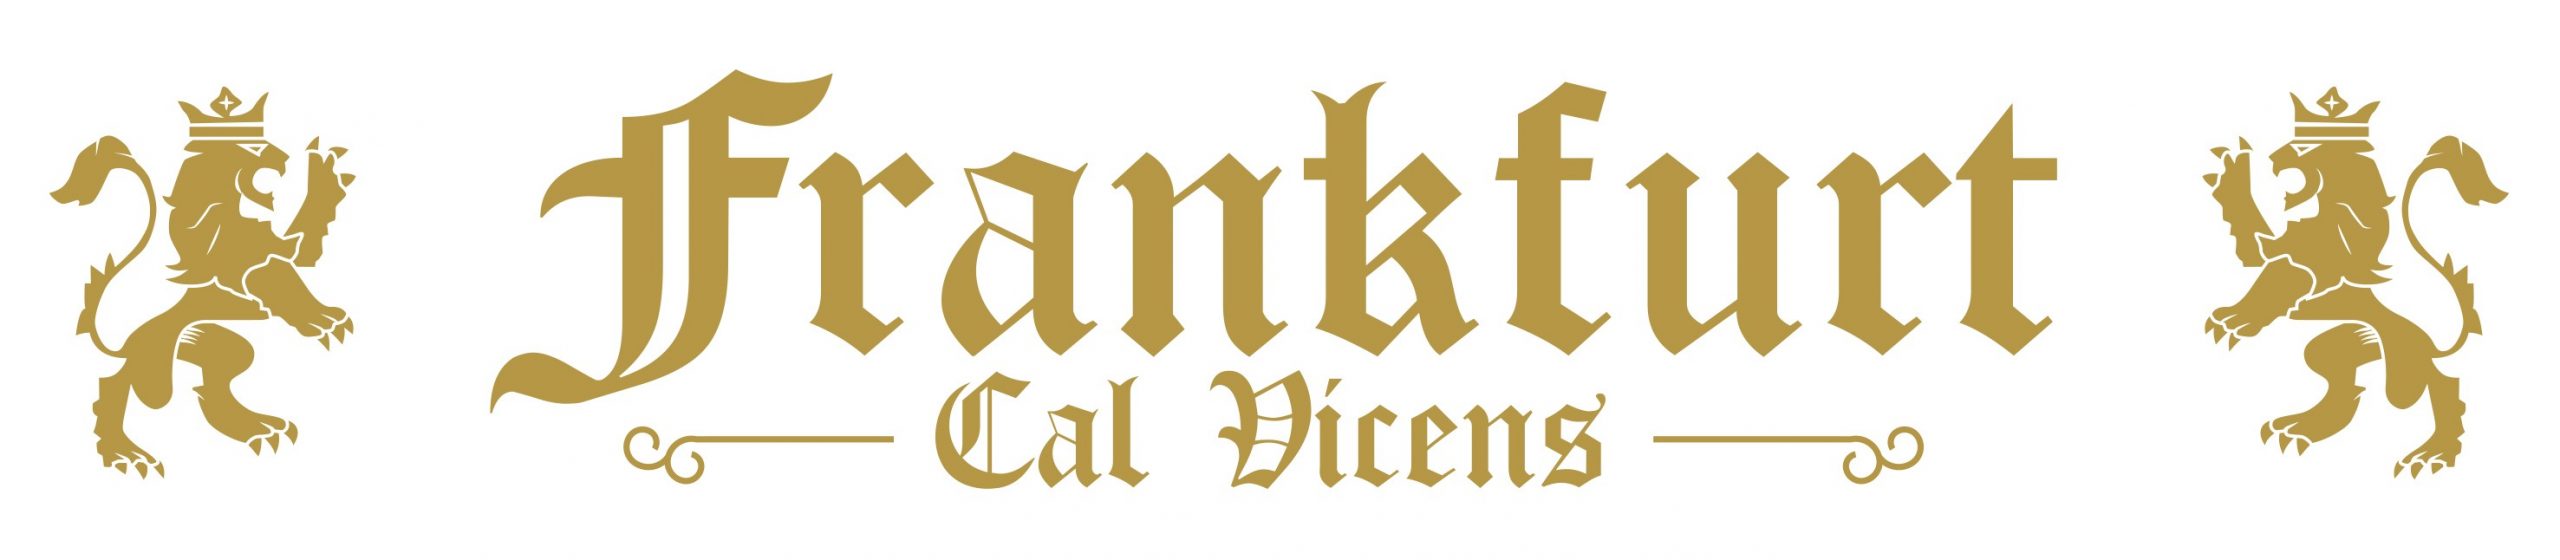 Frankfurt Cal Vicens